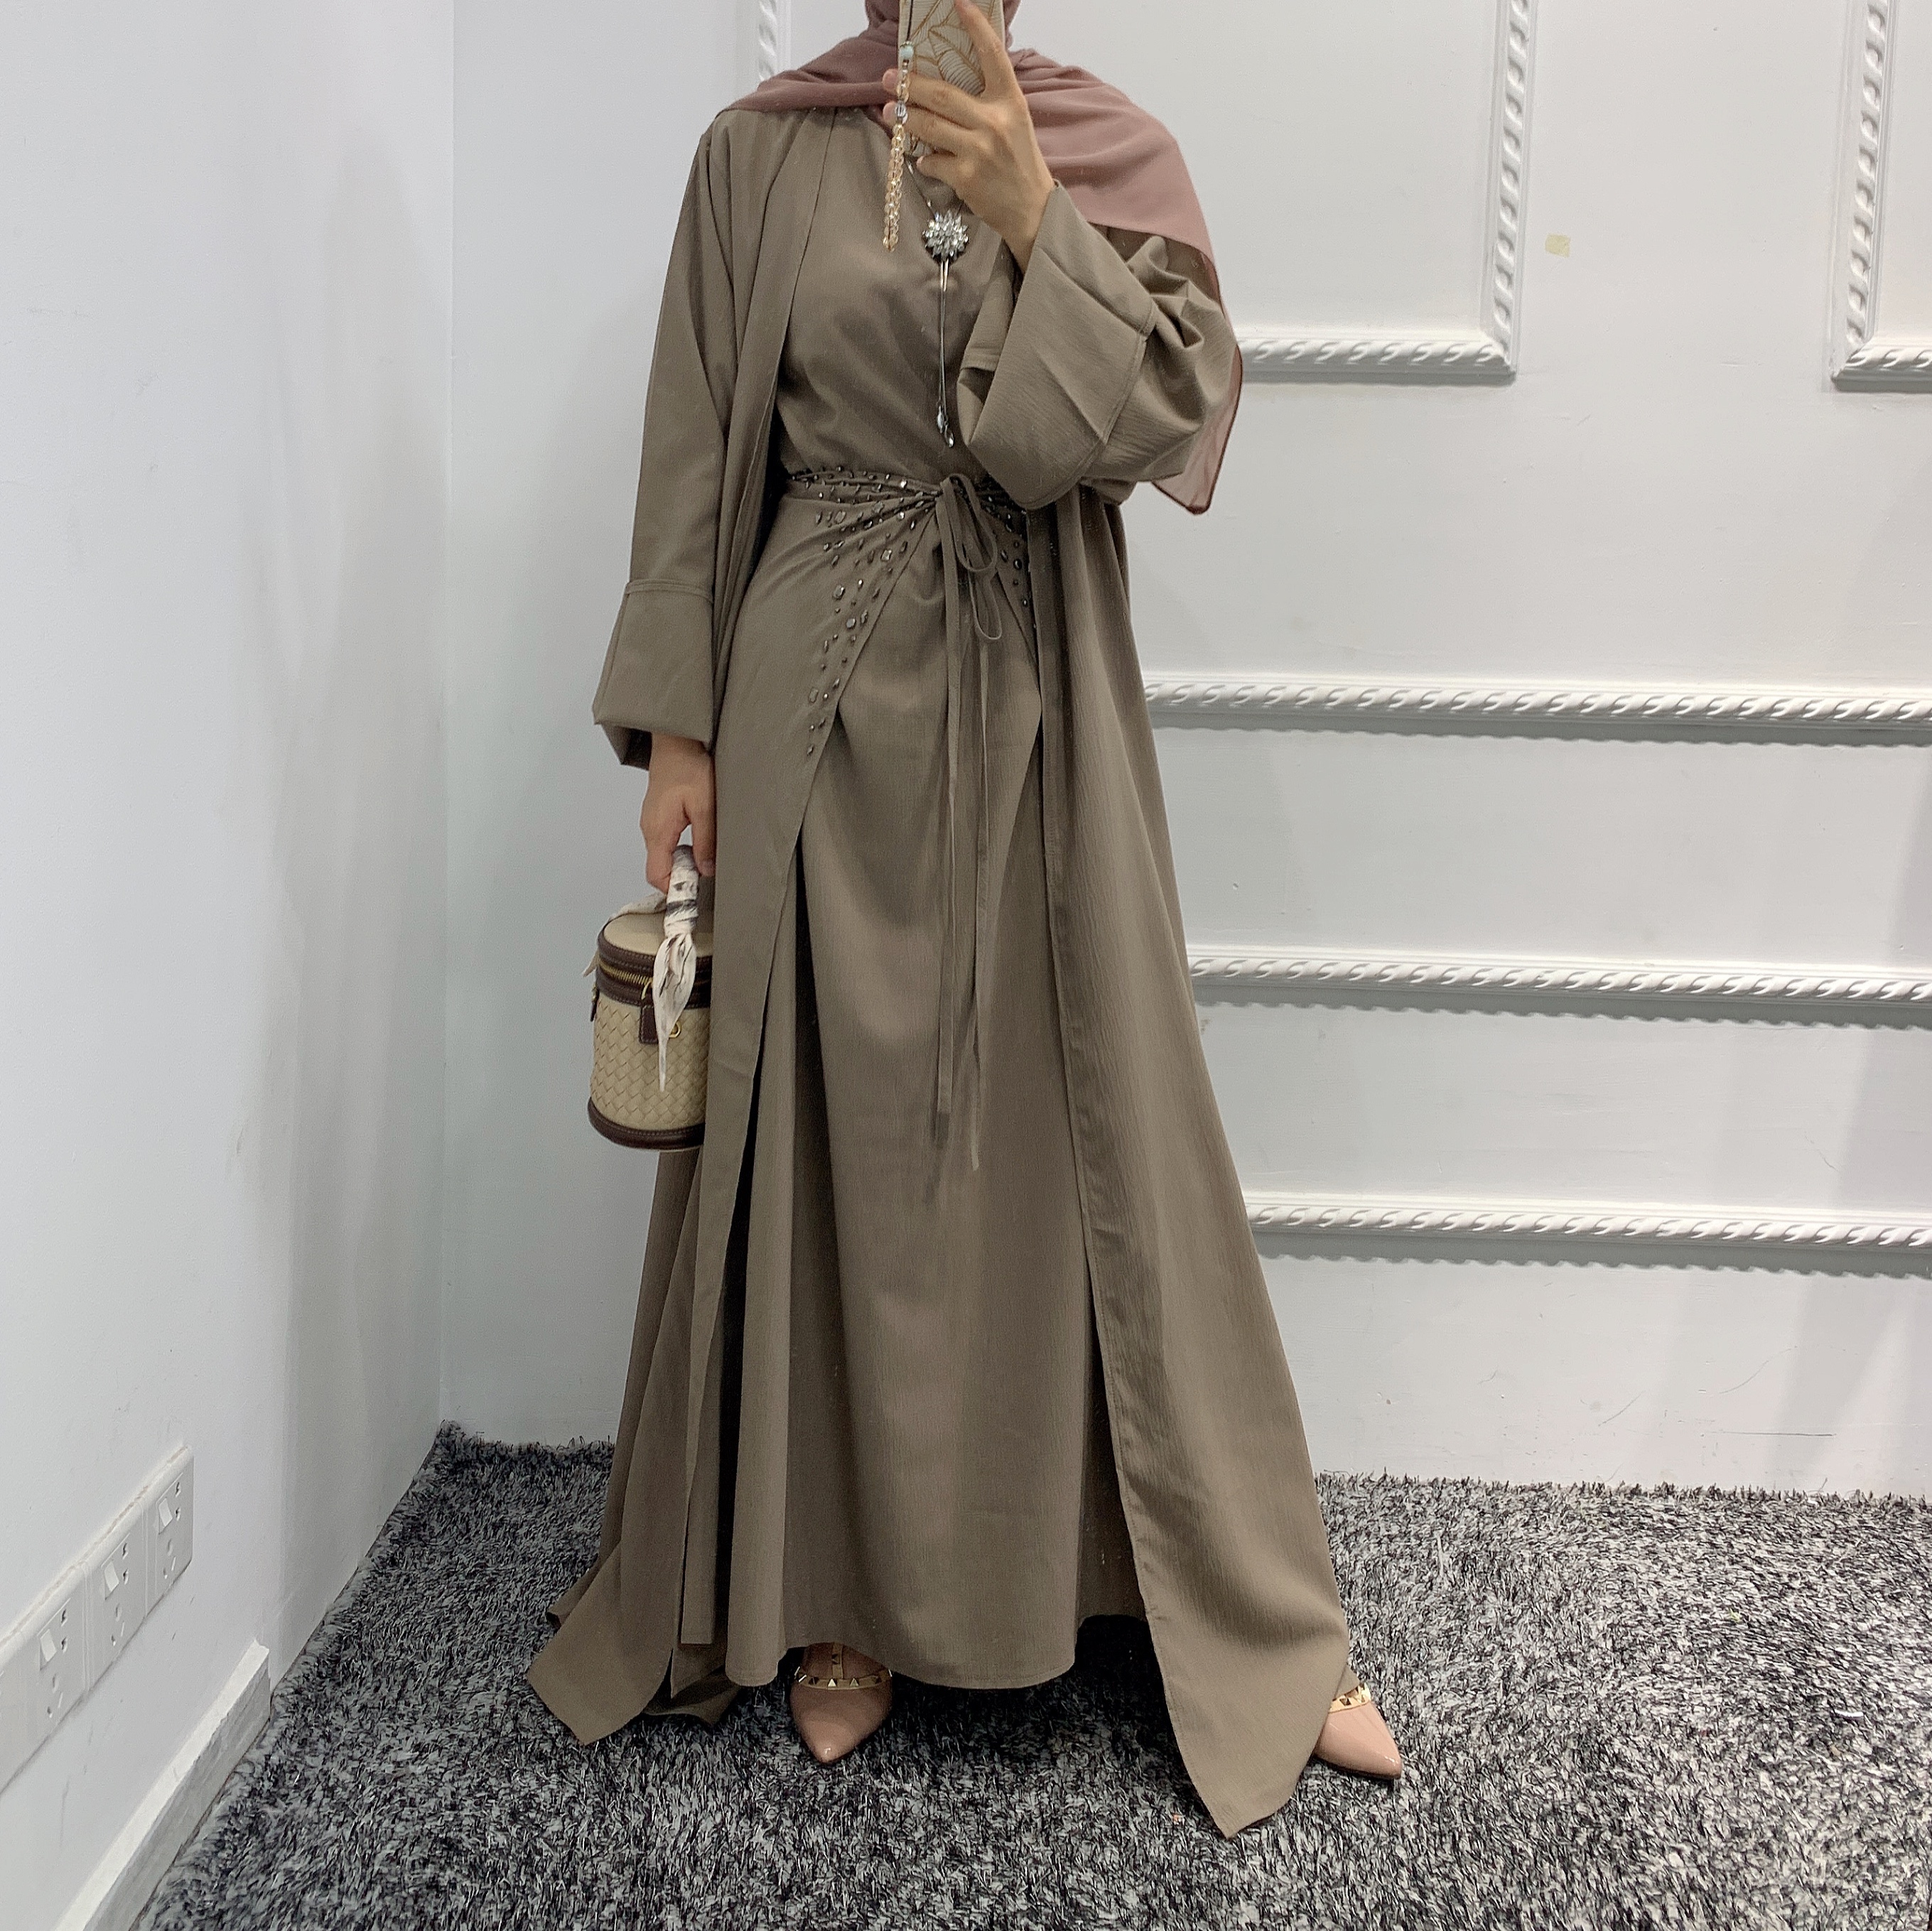 Wholesale chiffon abaya dubai kaftan islamic long batwing floral cardigan muslim dress